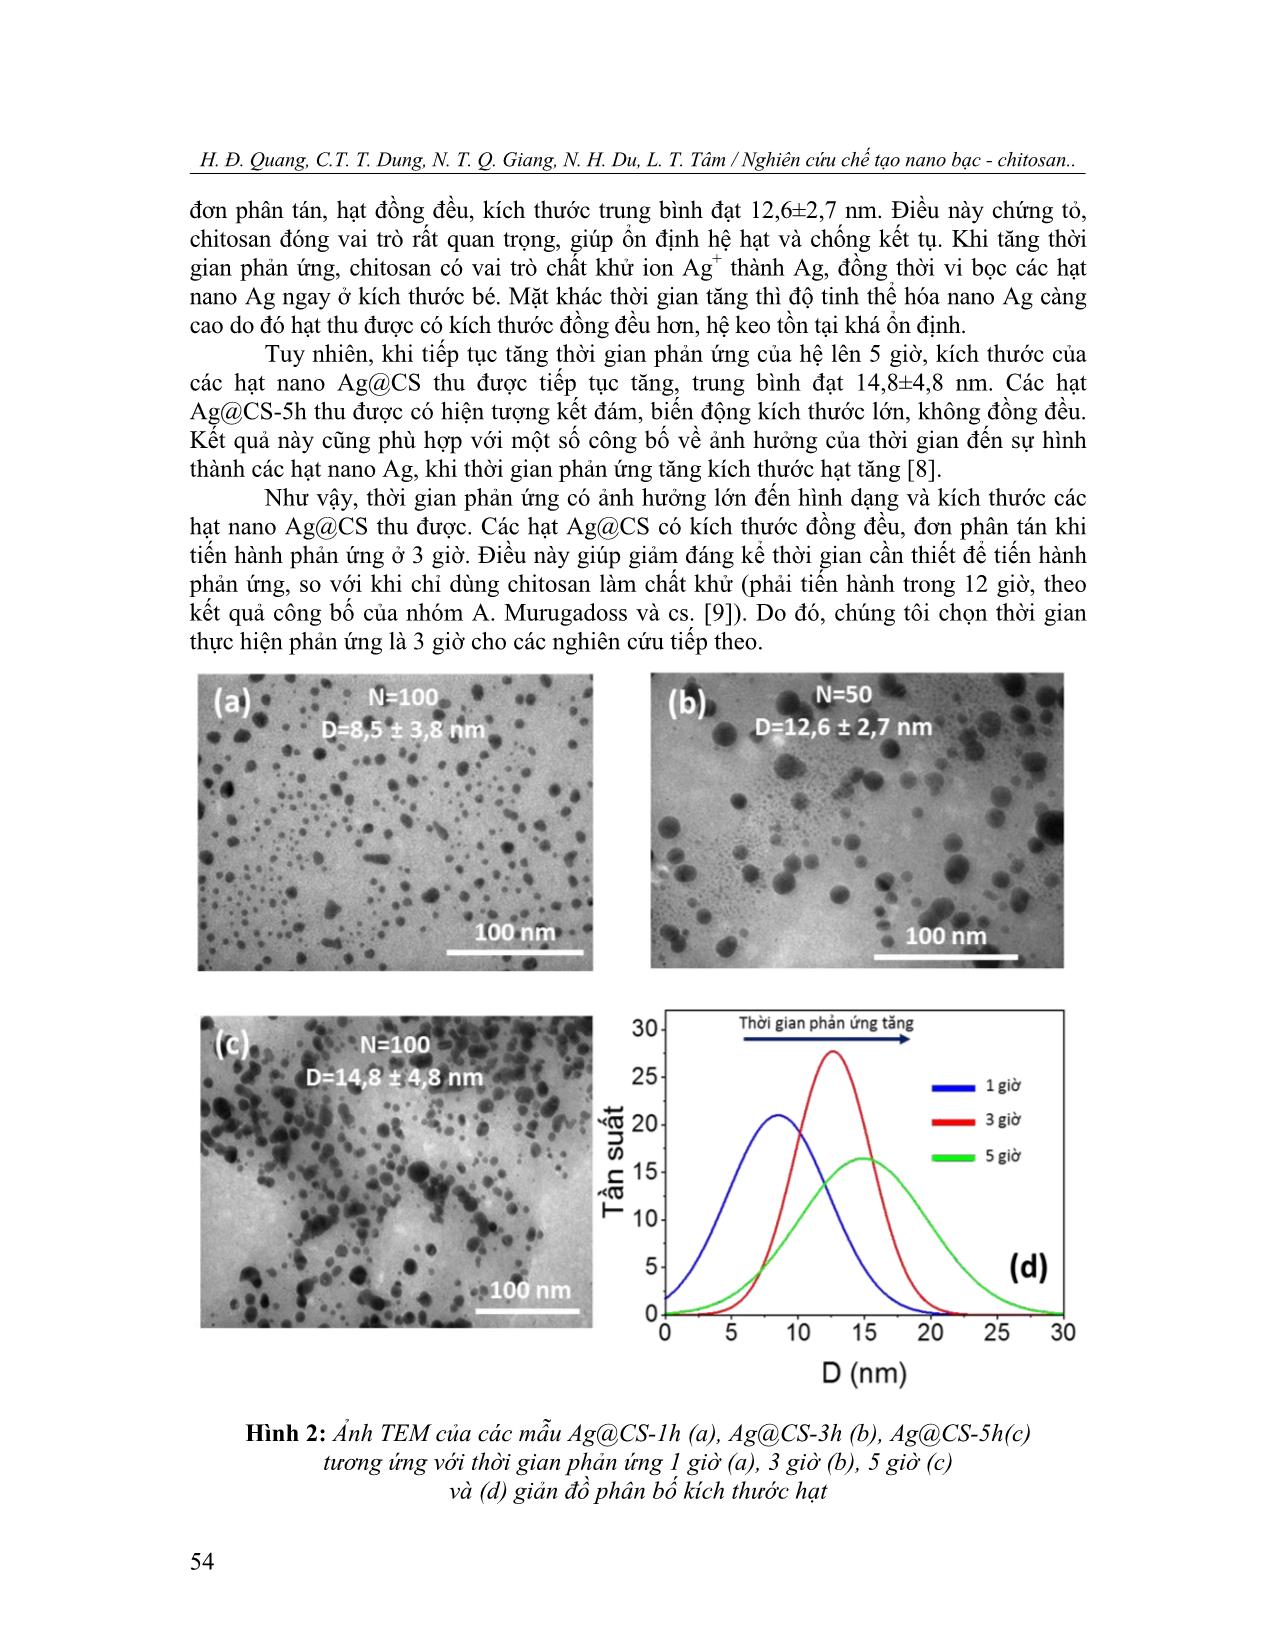 Nghiên cứu chế tạo nano bạc - Chitosan theo phương pháp bọc in-situ định hướng làm chế phẩm phòng bệnh trên cây trồng trang 4